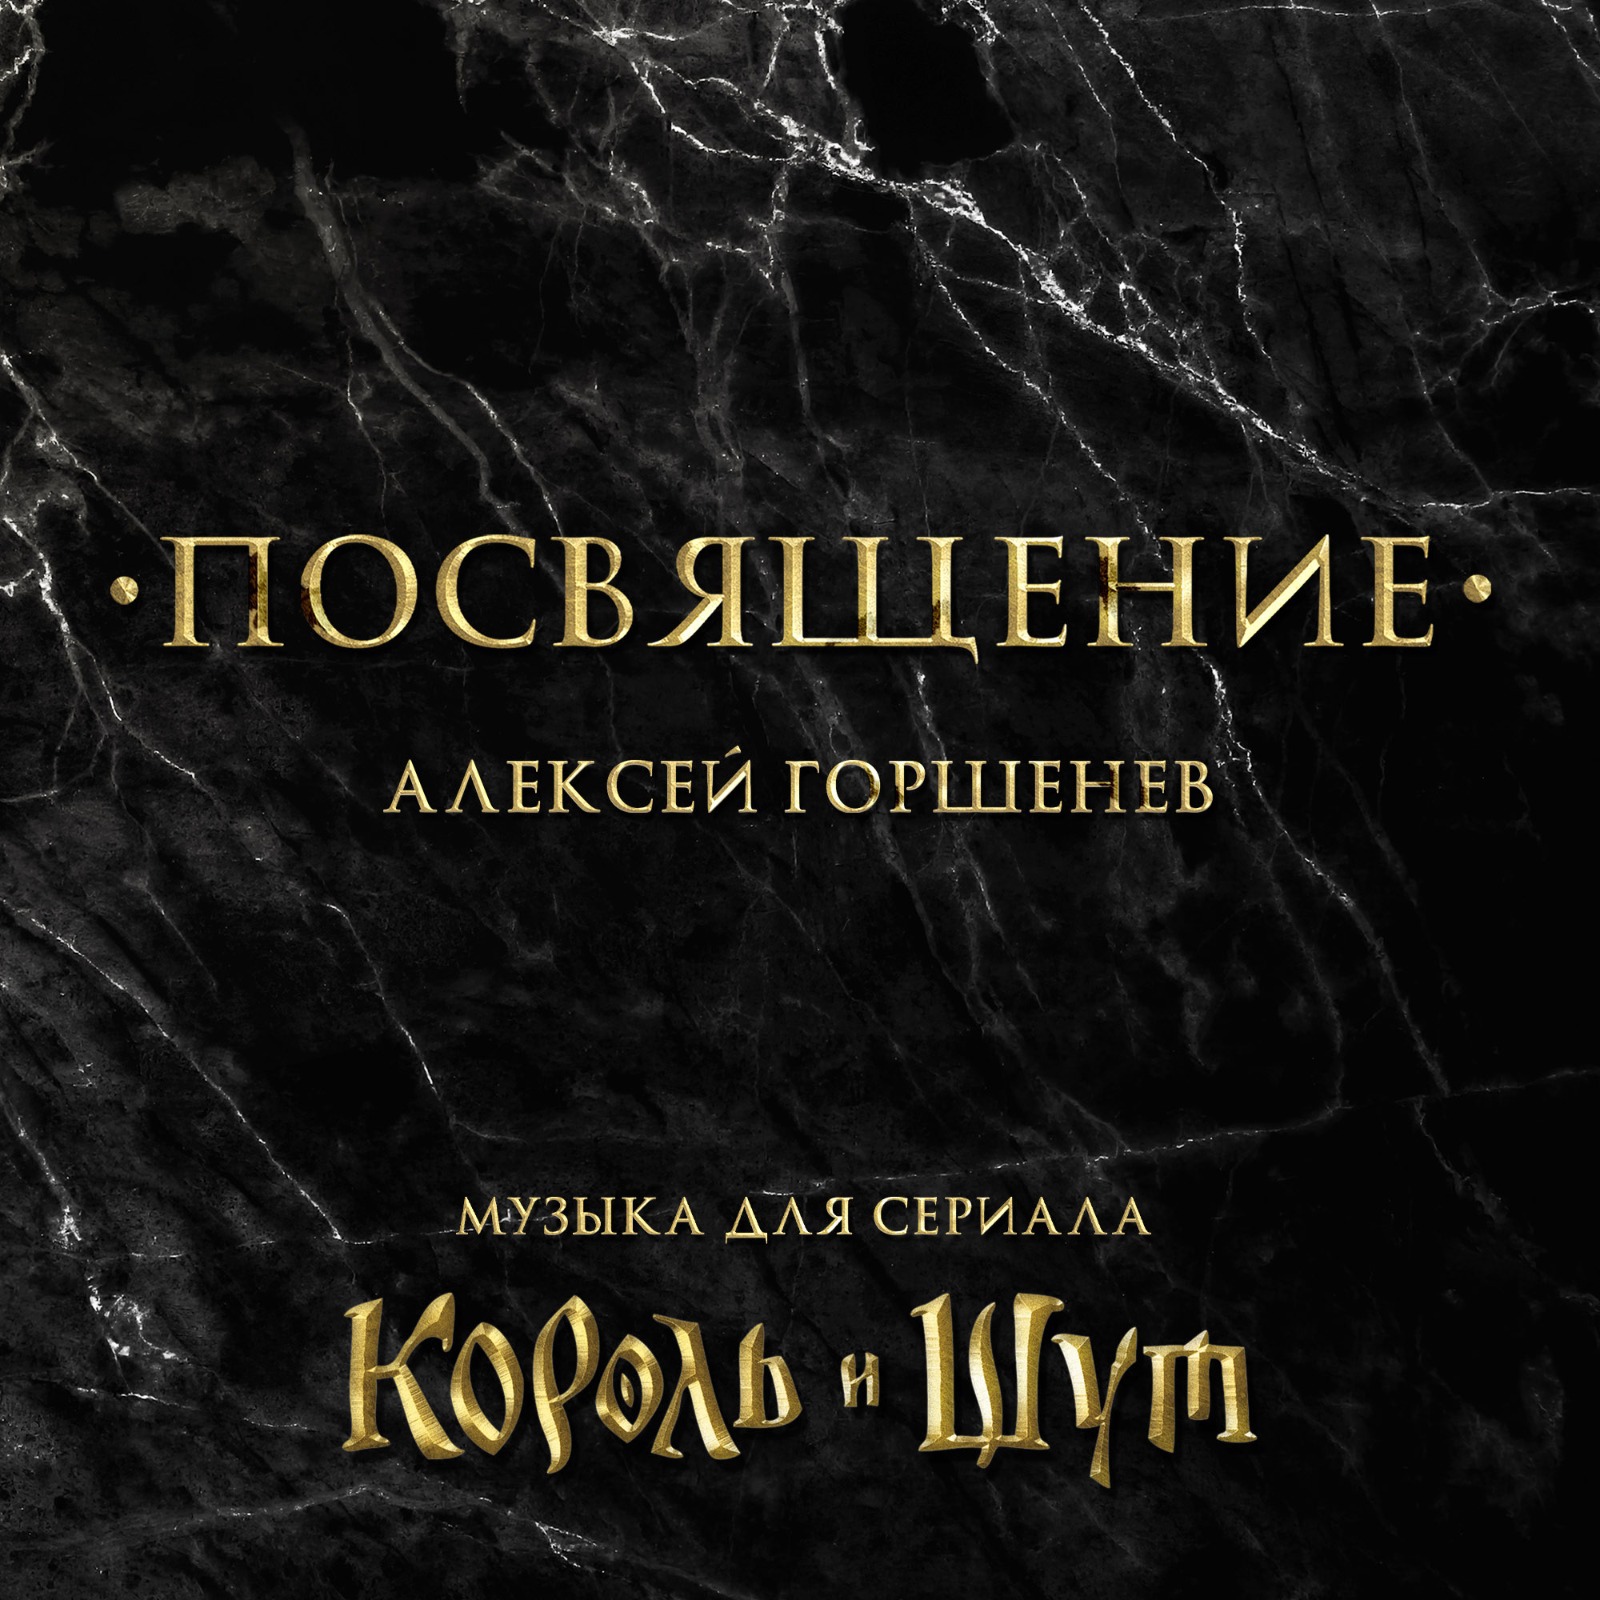 Алексей Горшенёв выпустил музыку из сериала "Король и Шут"